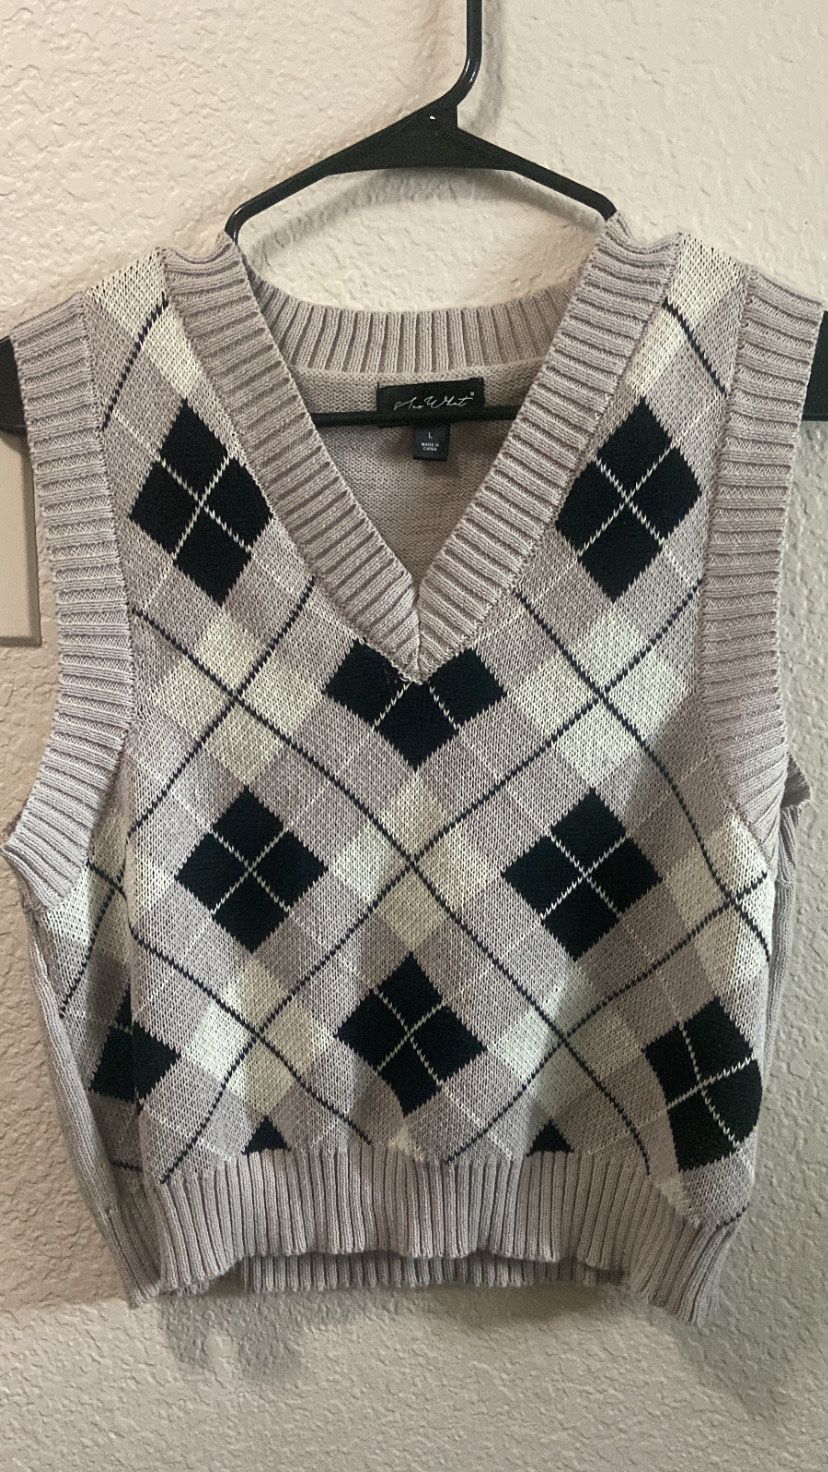 plaid knit sweater vest